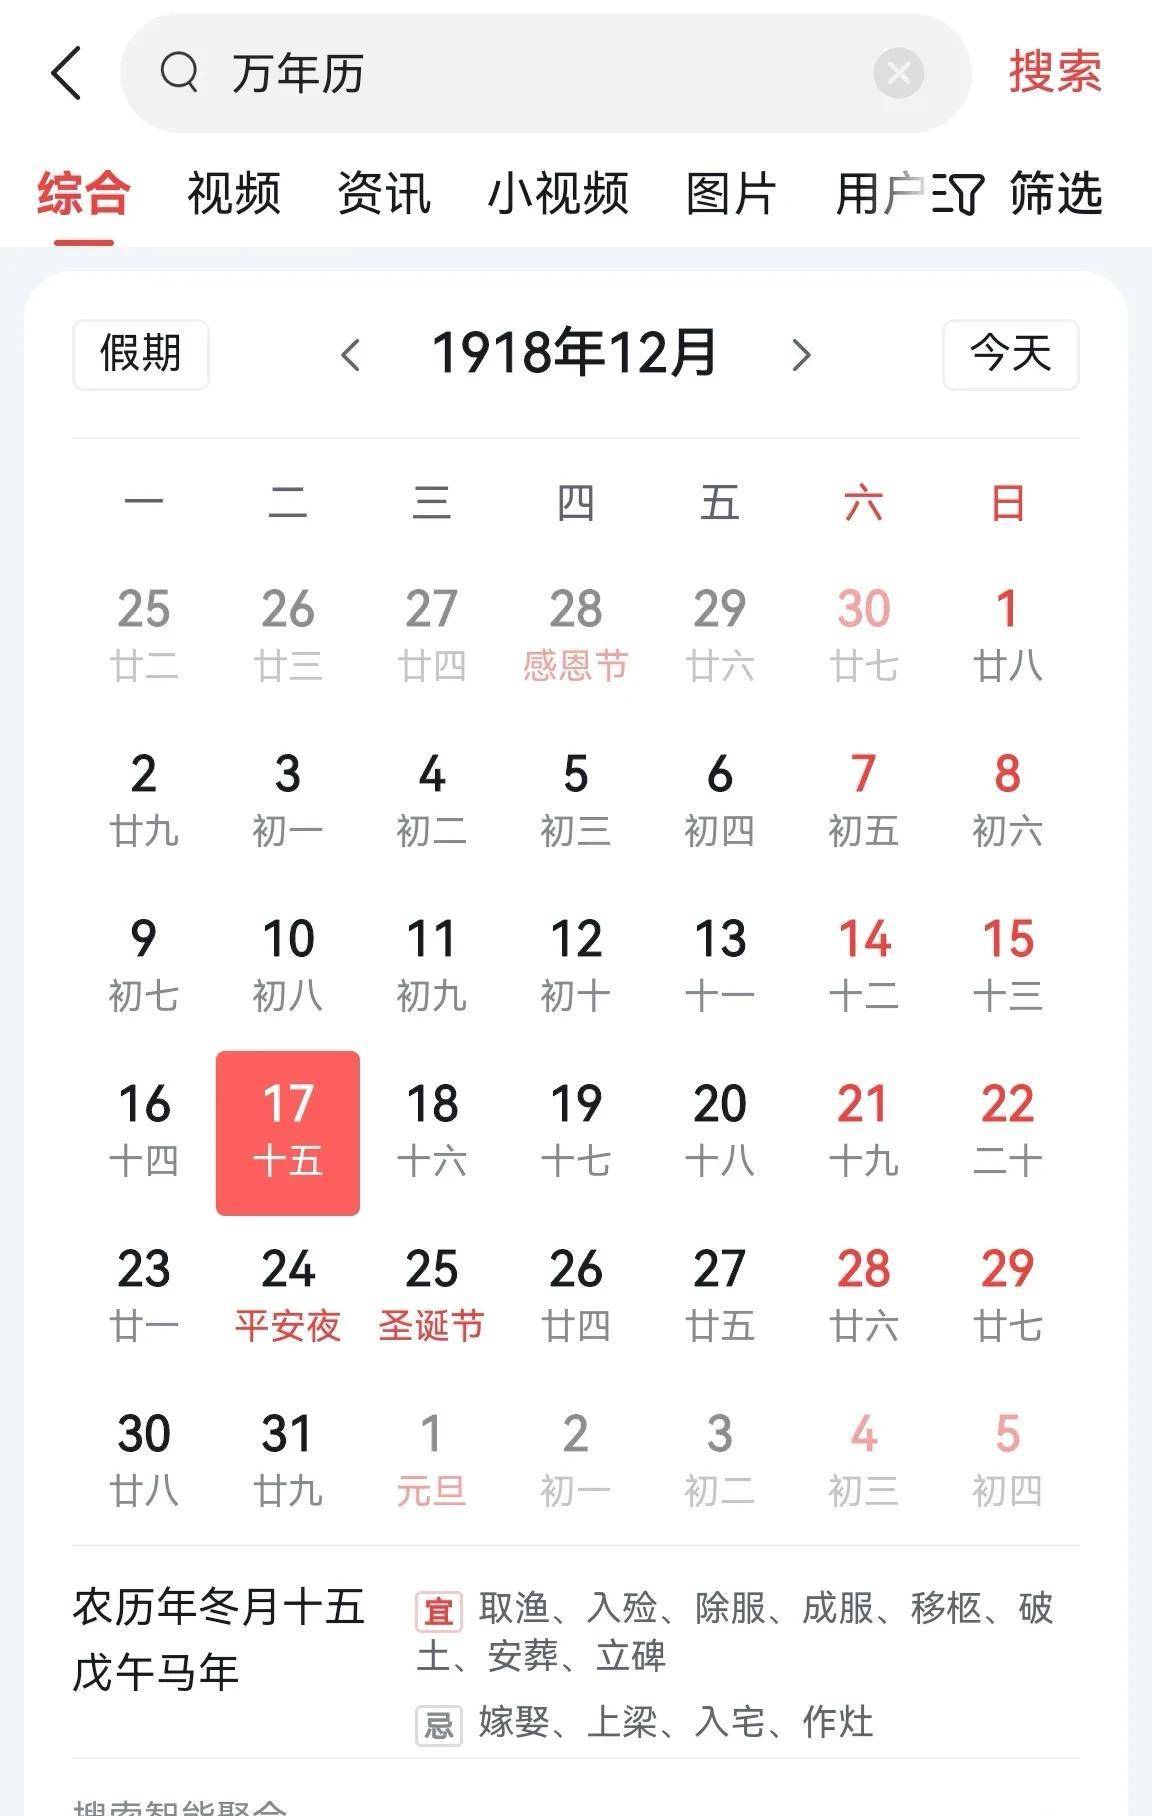 师昌绪院士的出生日期到底是哪一天？